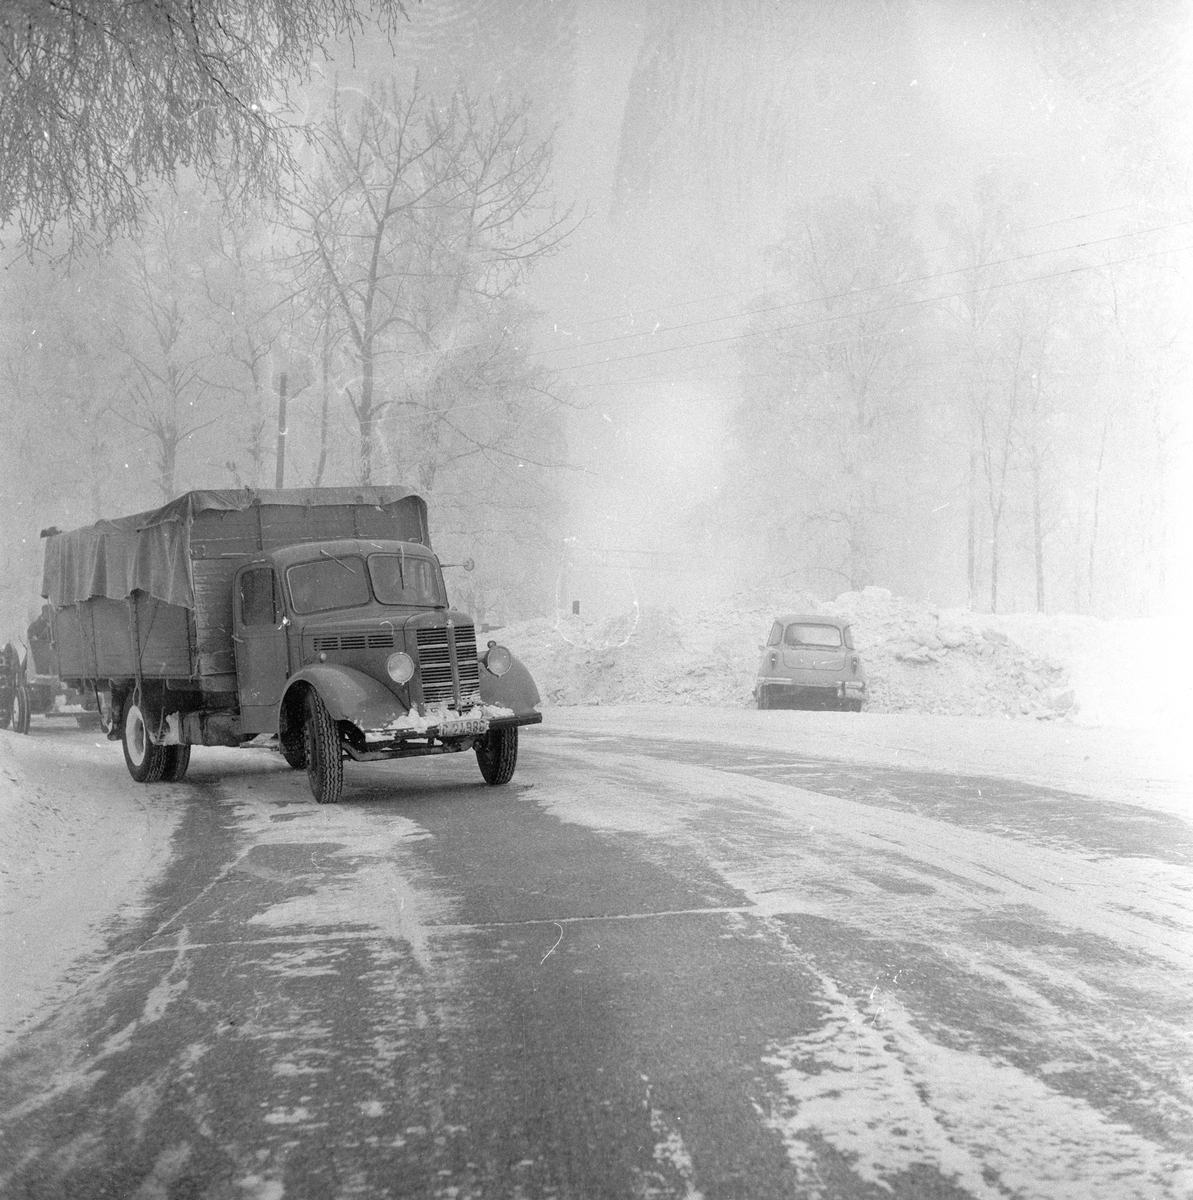 Lastebil av typen Bedford, årsmodell 1946-53, kjører langs Trondheimsveien i snøvær.